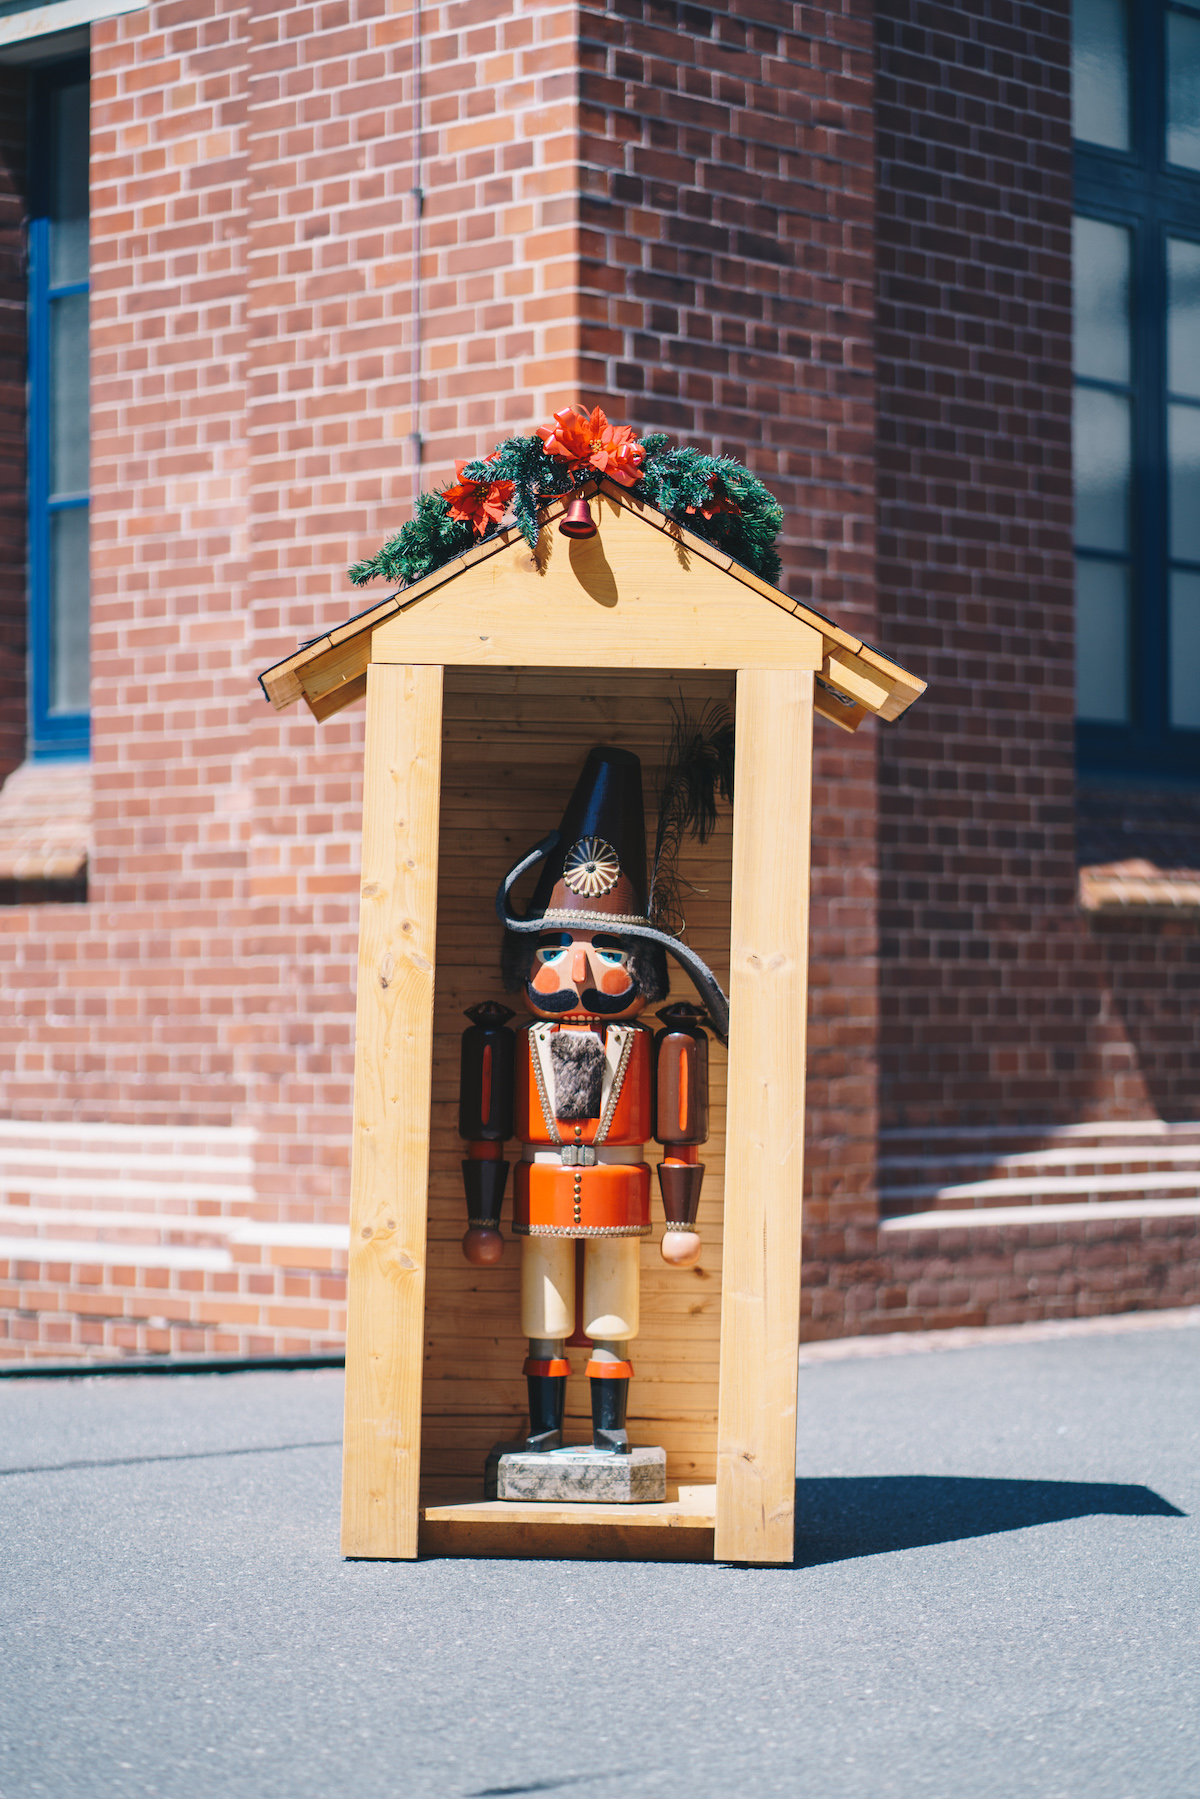 Ein sehr großer Nussknacker (Großfigur aus dem Erzgebirge) steht in einem mit Weihnachtsdekoration geschmückten kleinen Holzhaus.